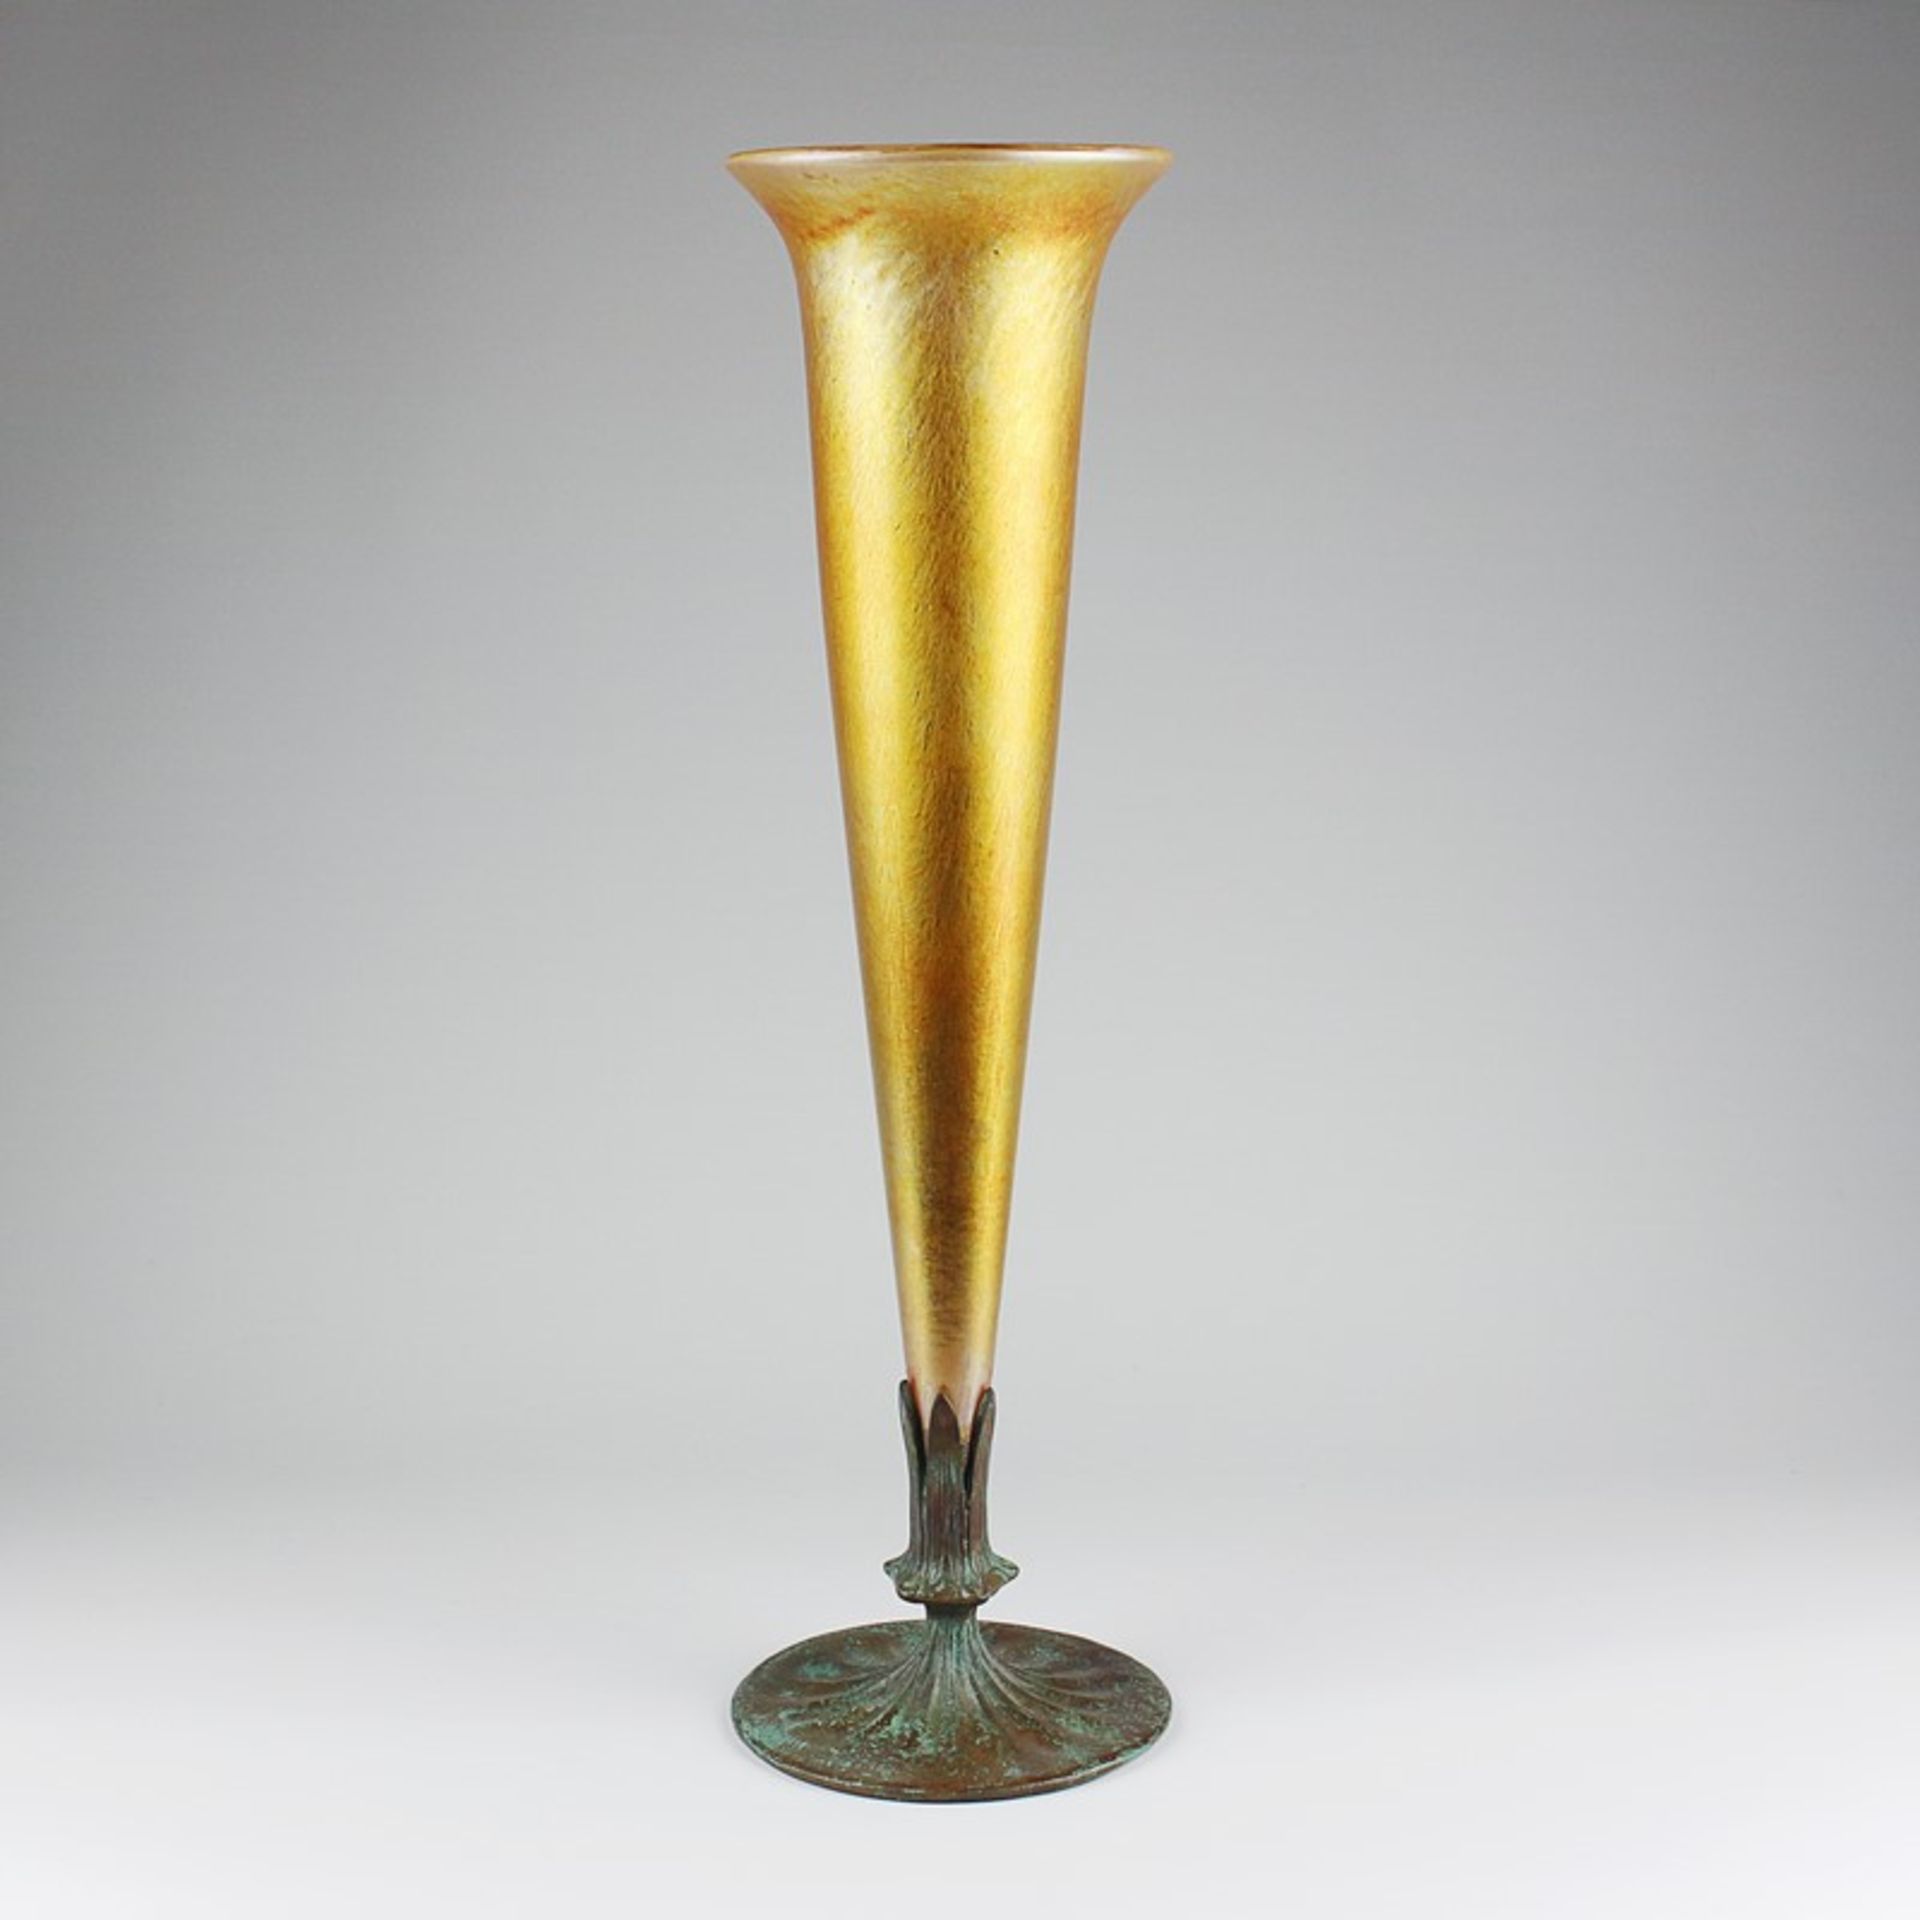 Tiffany - Trompetenvaseum 1900/10, Jugendstil, Louis Comfort Tiffany, New York, sog. Favrile-Glas,